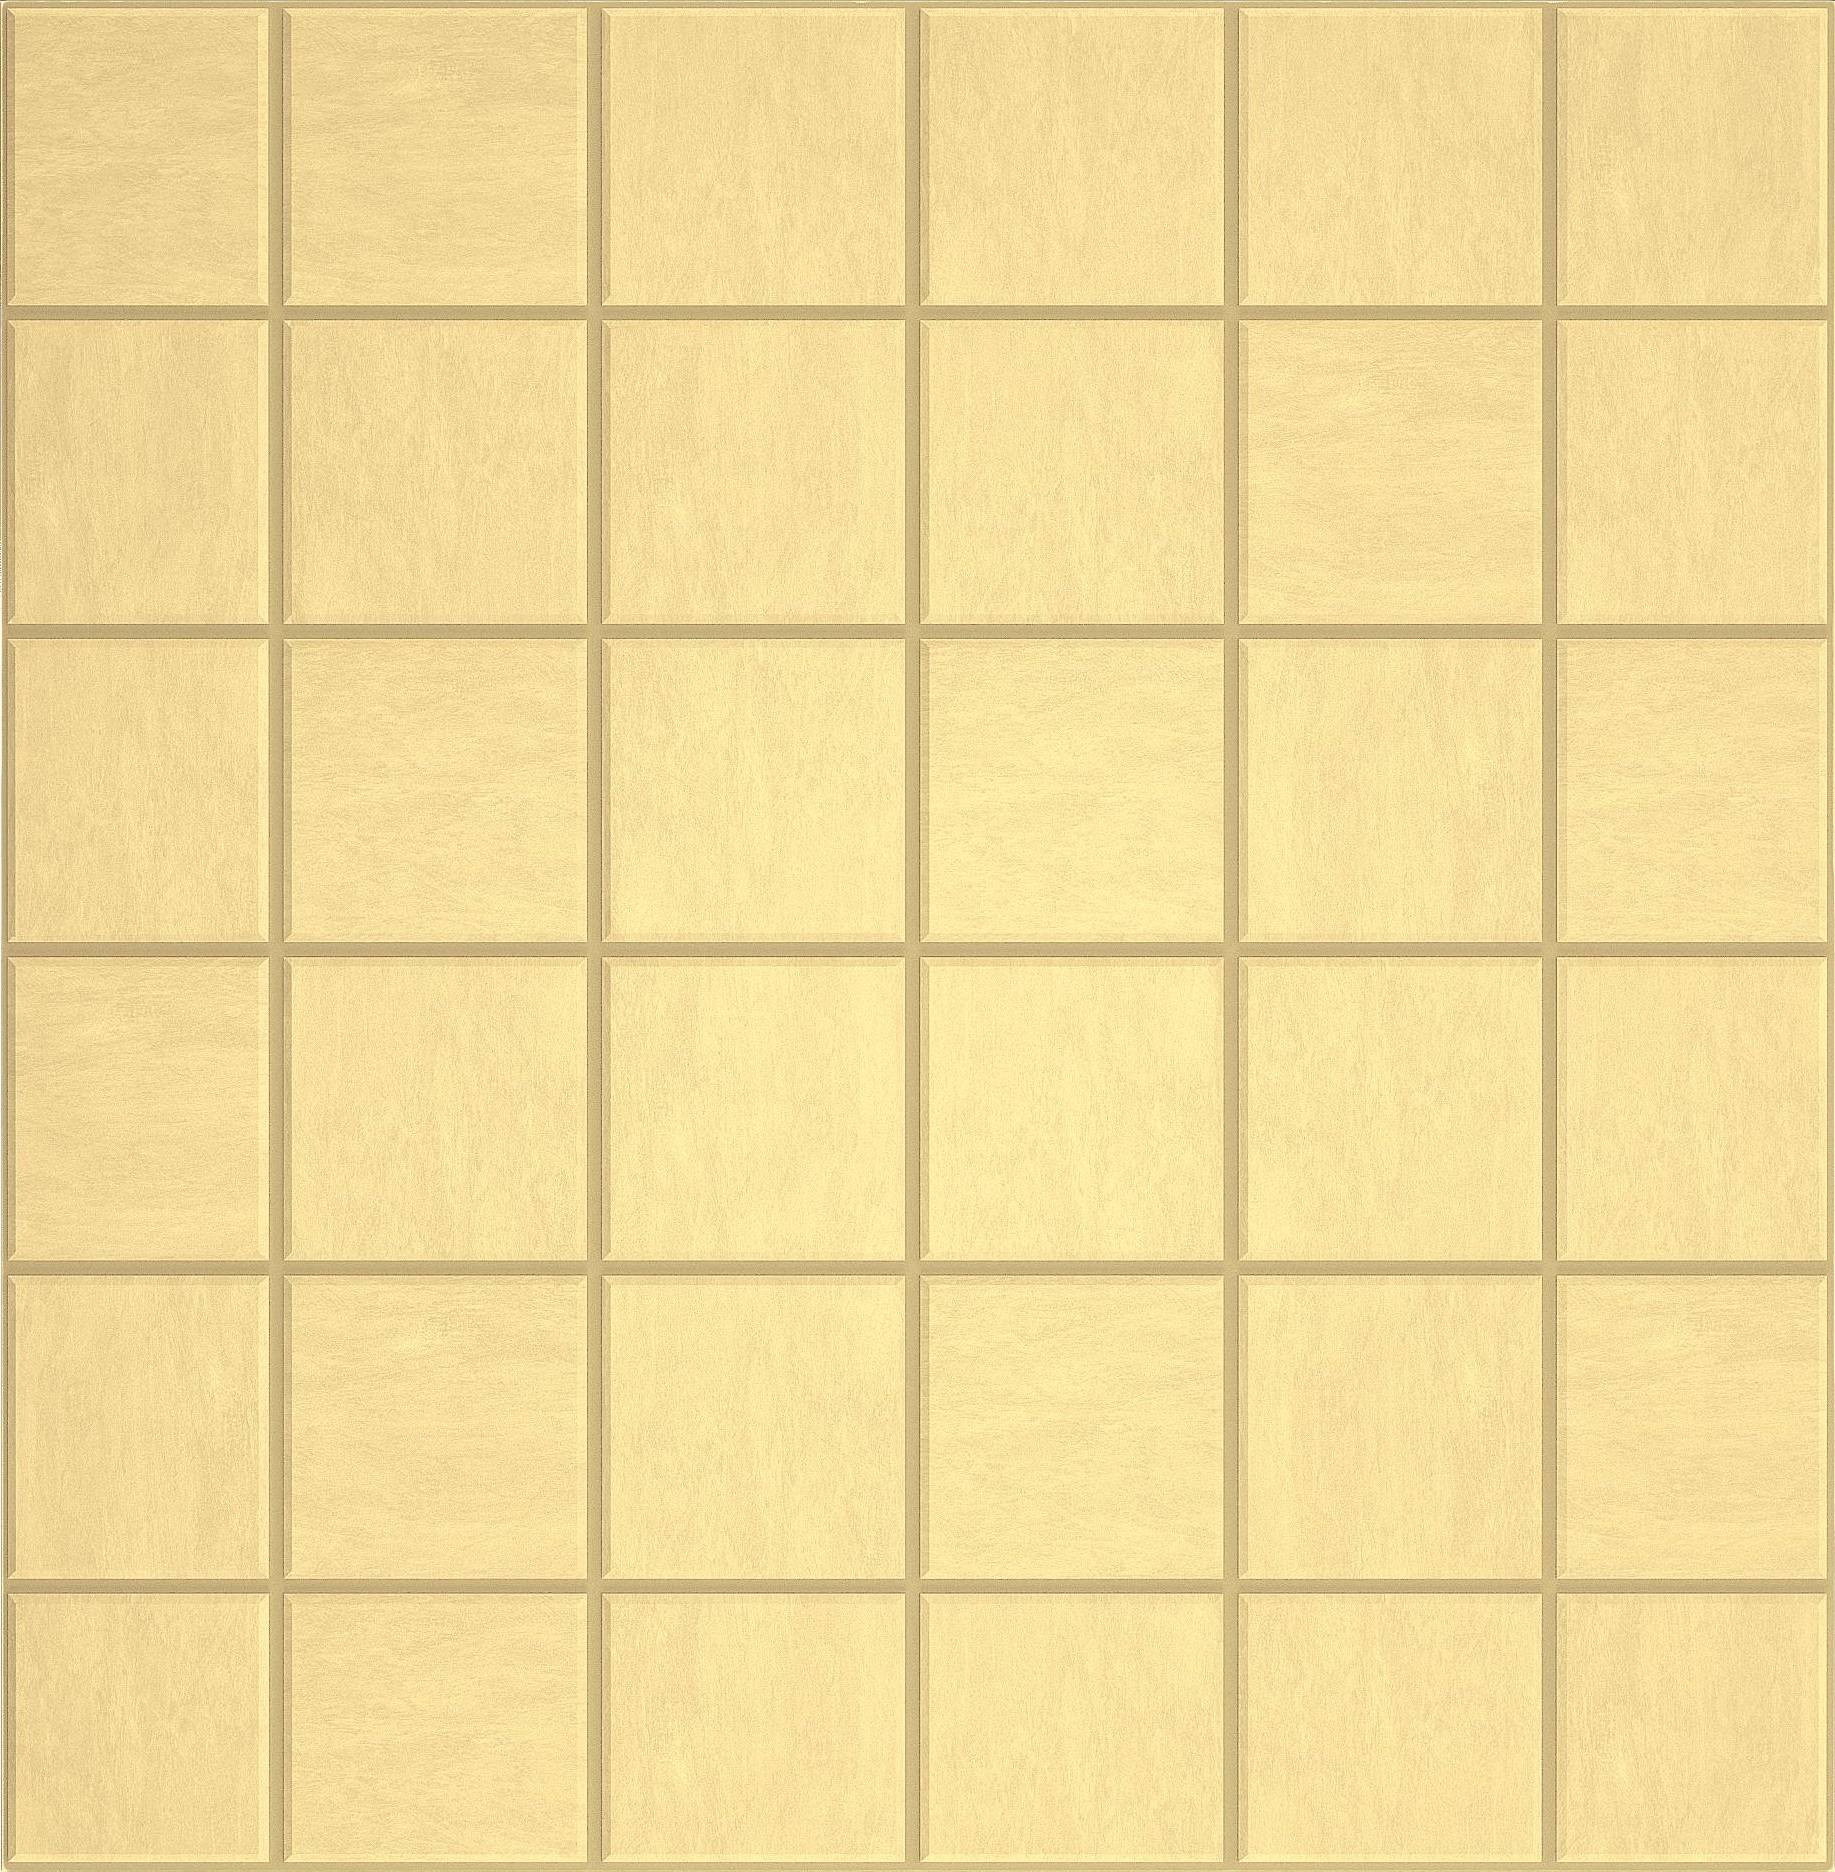 Мозаика Ametis Spectrum Yellow SR04 (5x5) Непол. 30x30 мозаика ametis spectrum yellow sr04 cube непол 29x25